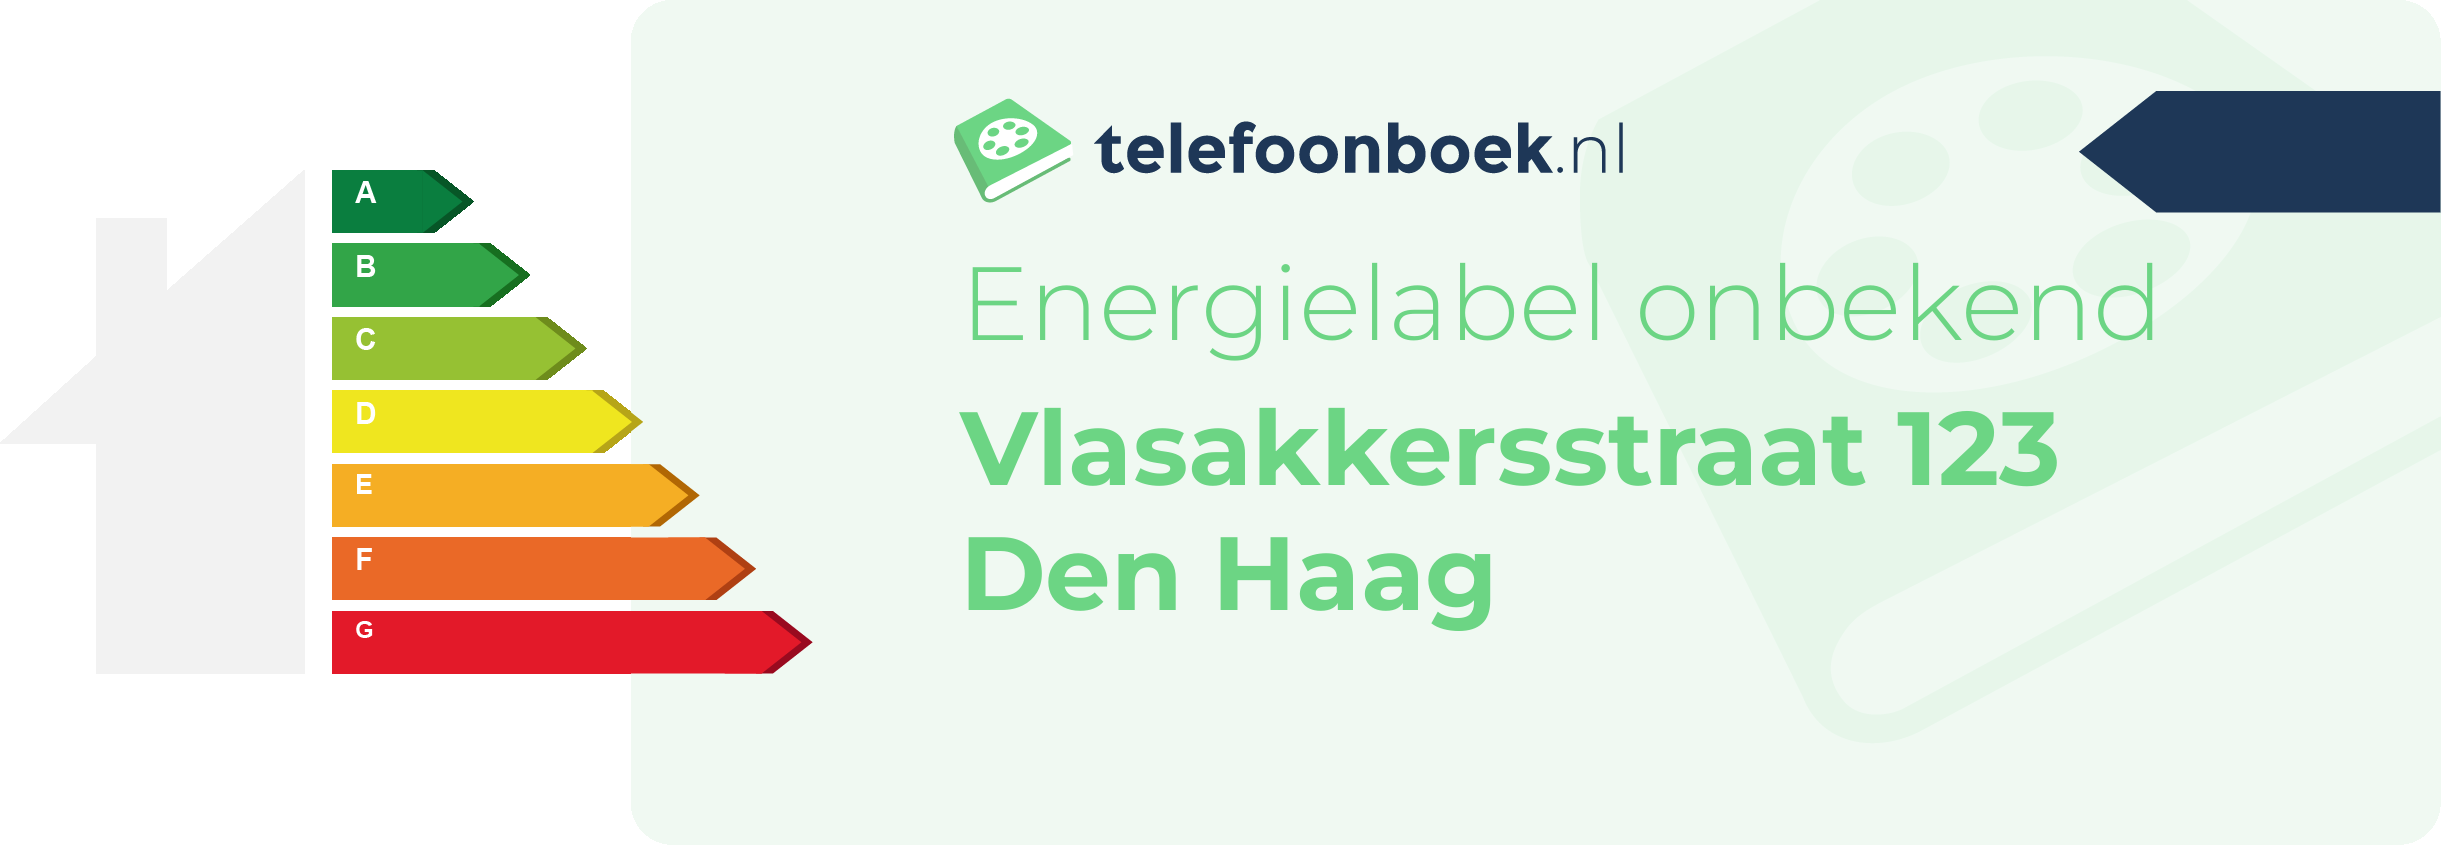 Energielabel Vlasakkersstraat 123 Den Haag